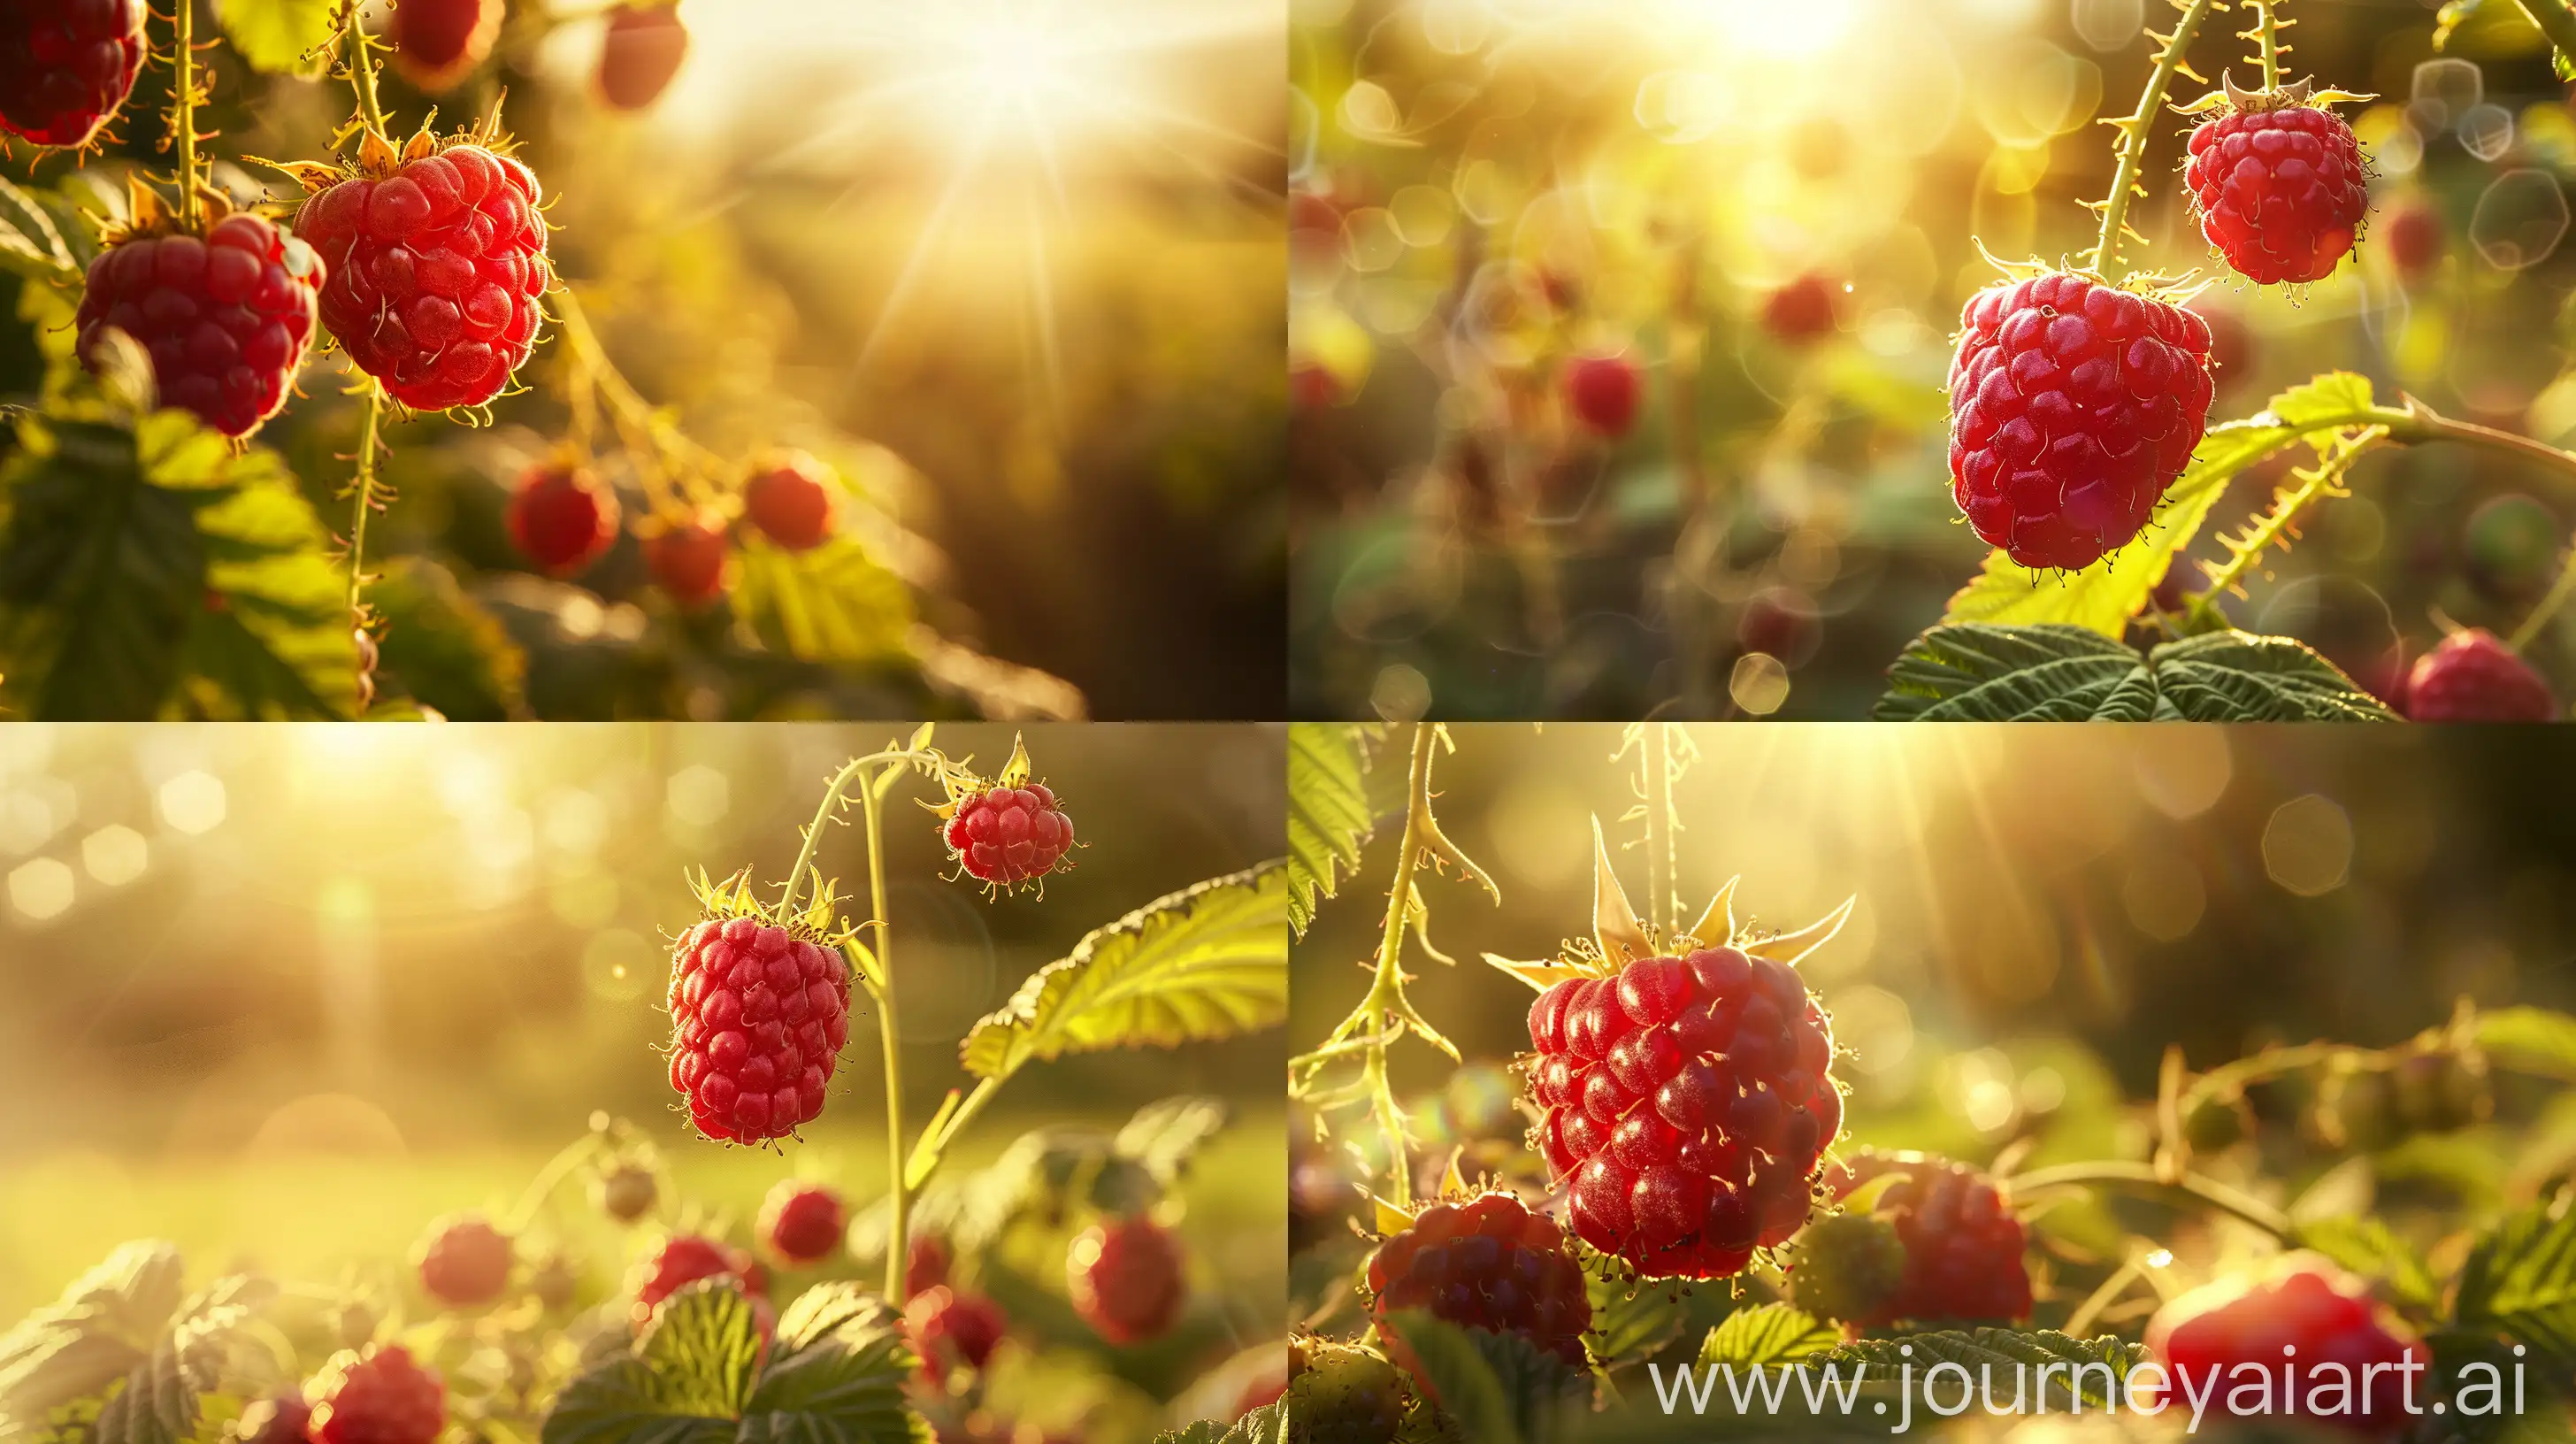 Serene-Raspberry-Heritage-Plant-in-Golden-Sunlight